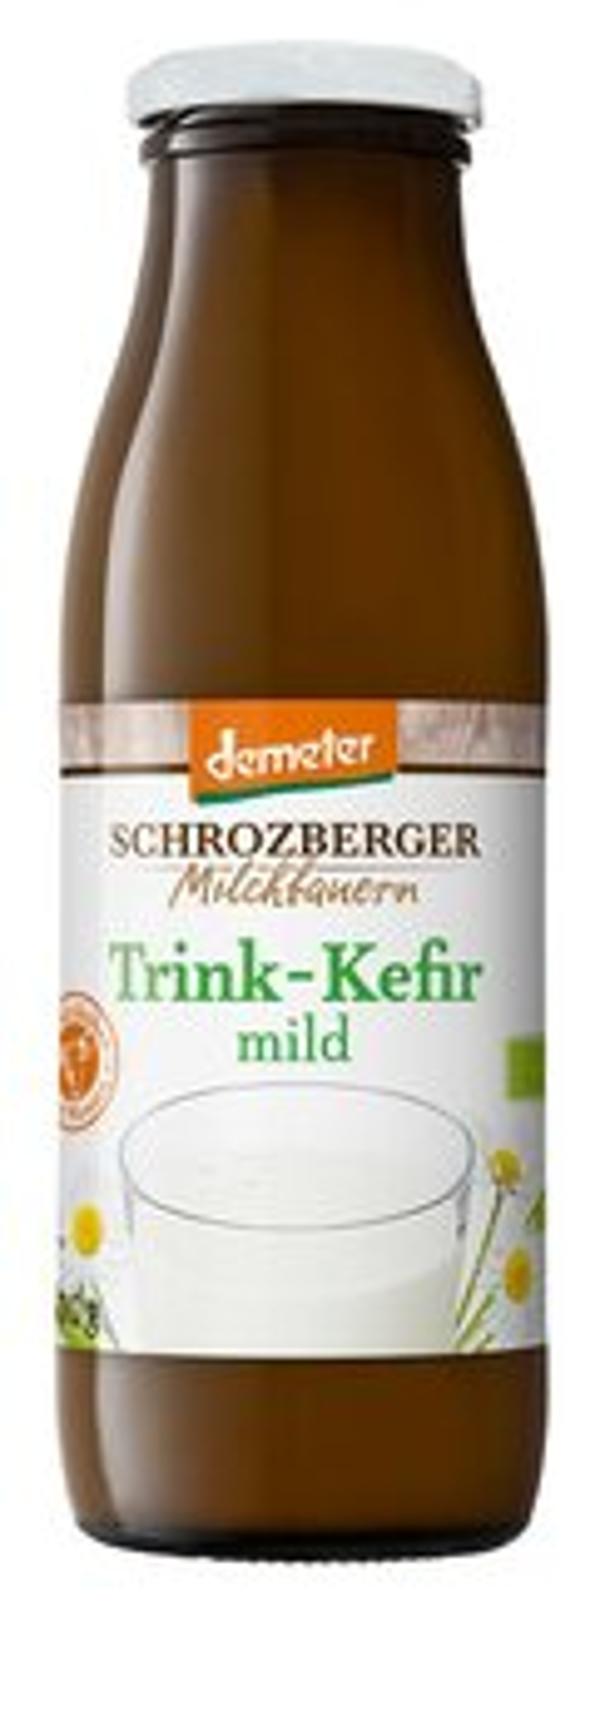 Produktfoto zu Trink-Kefir mild 1,5 %, 500 ml